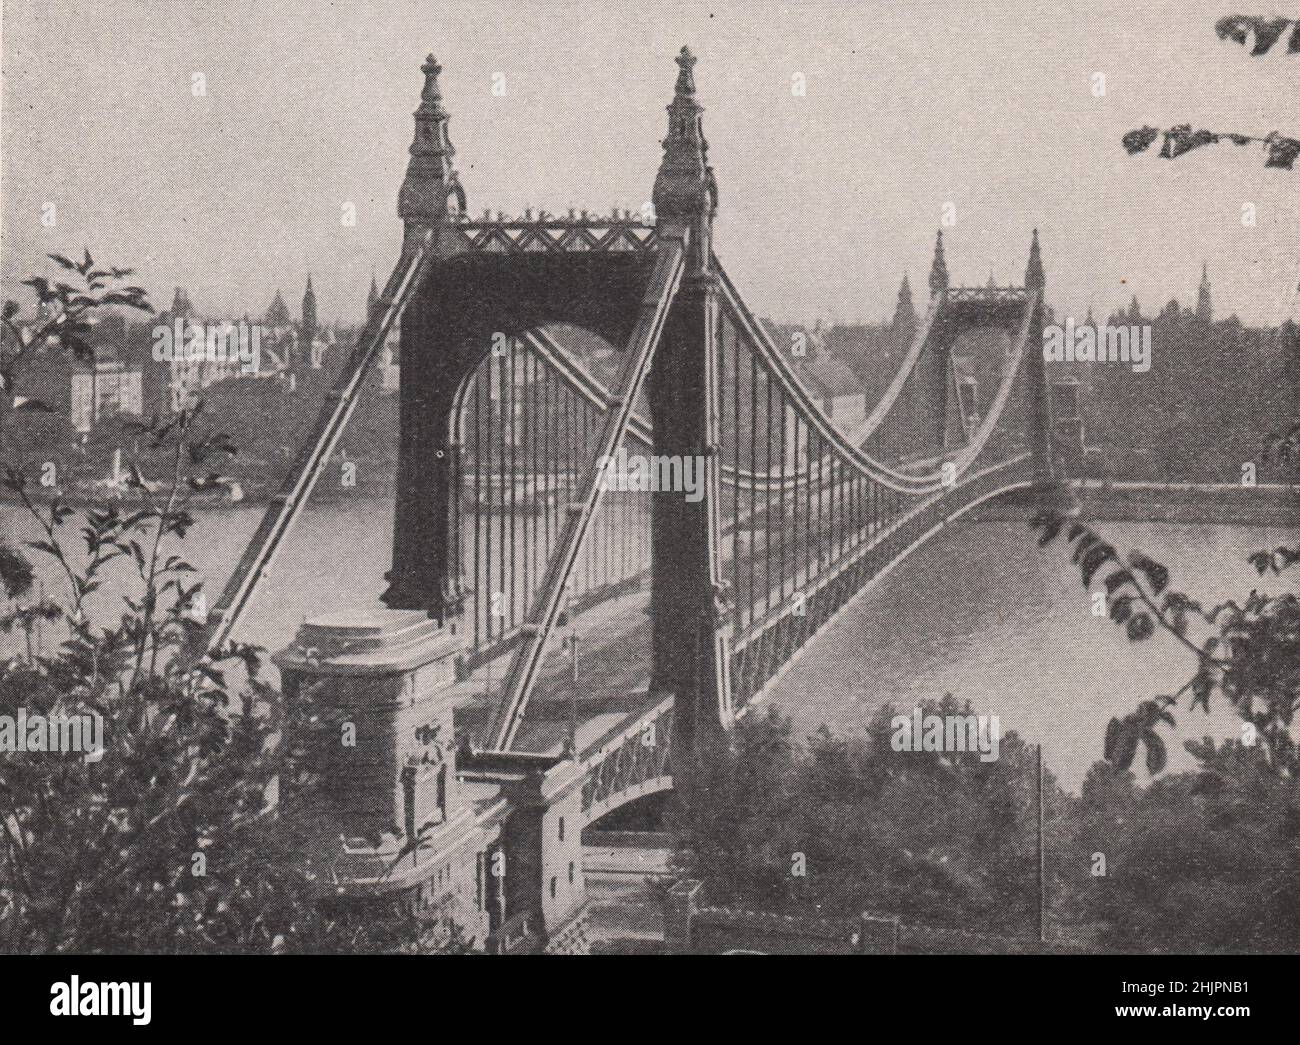 Elizabeth suspension bridge uniting pest and buda. Hungary. Budapest (1923) Stock Photo